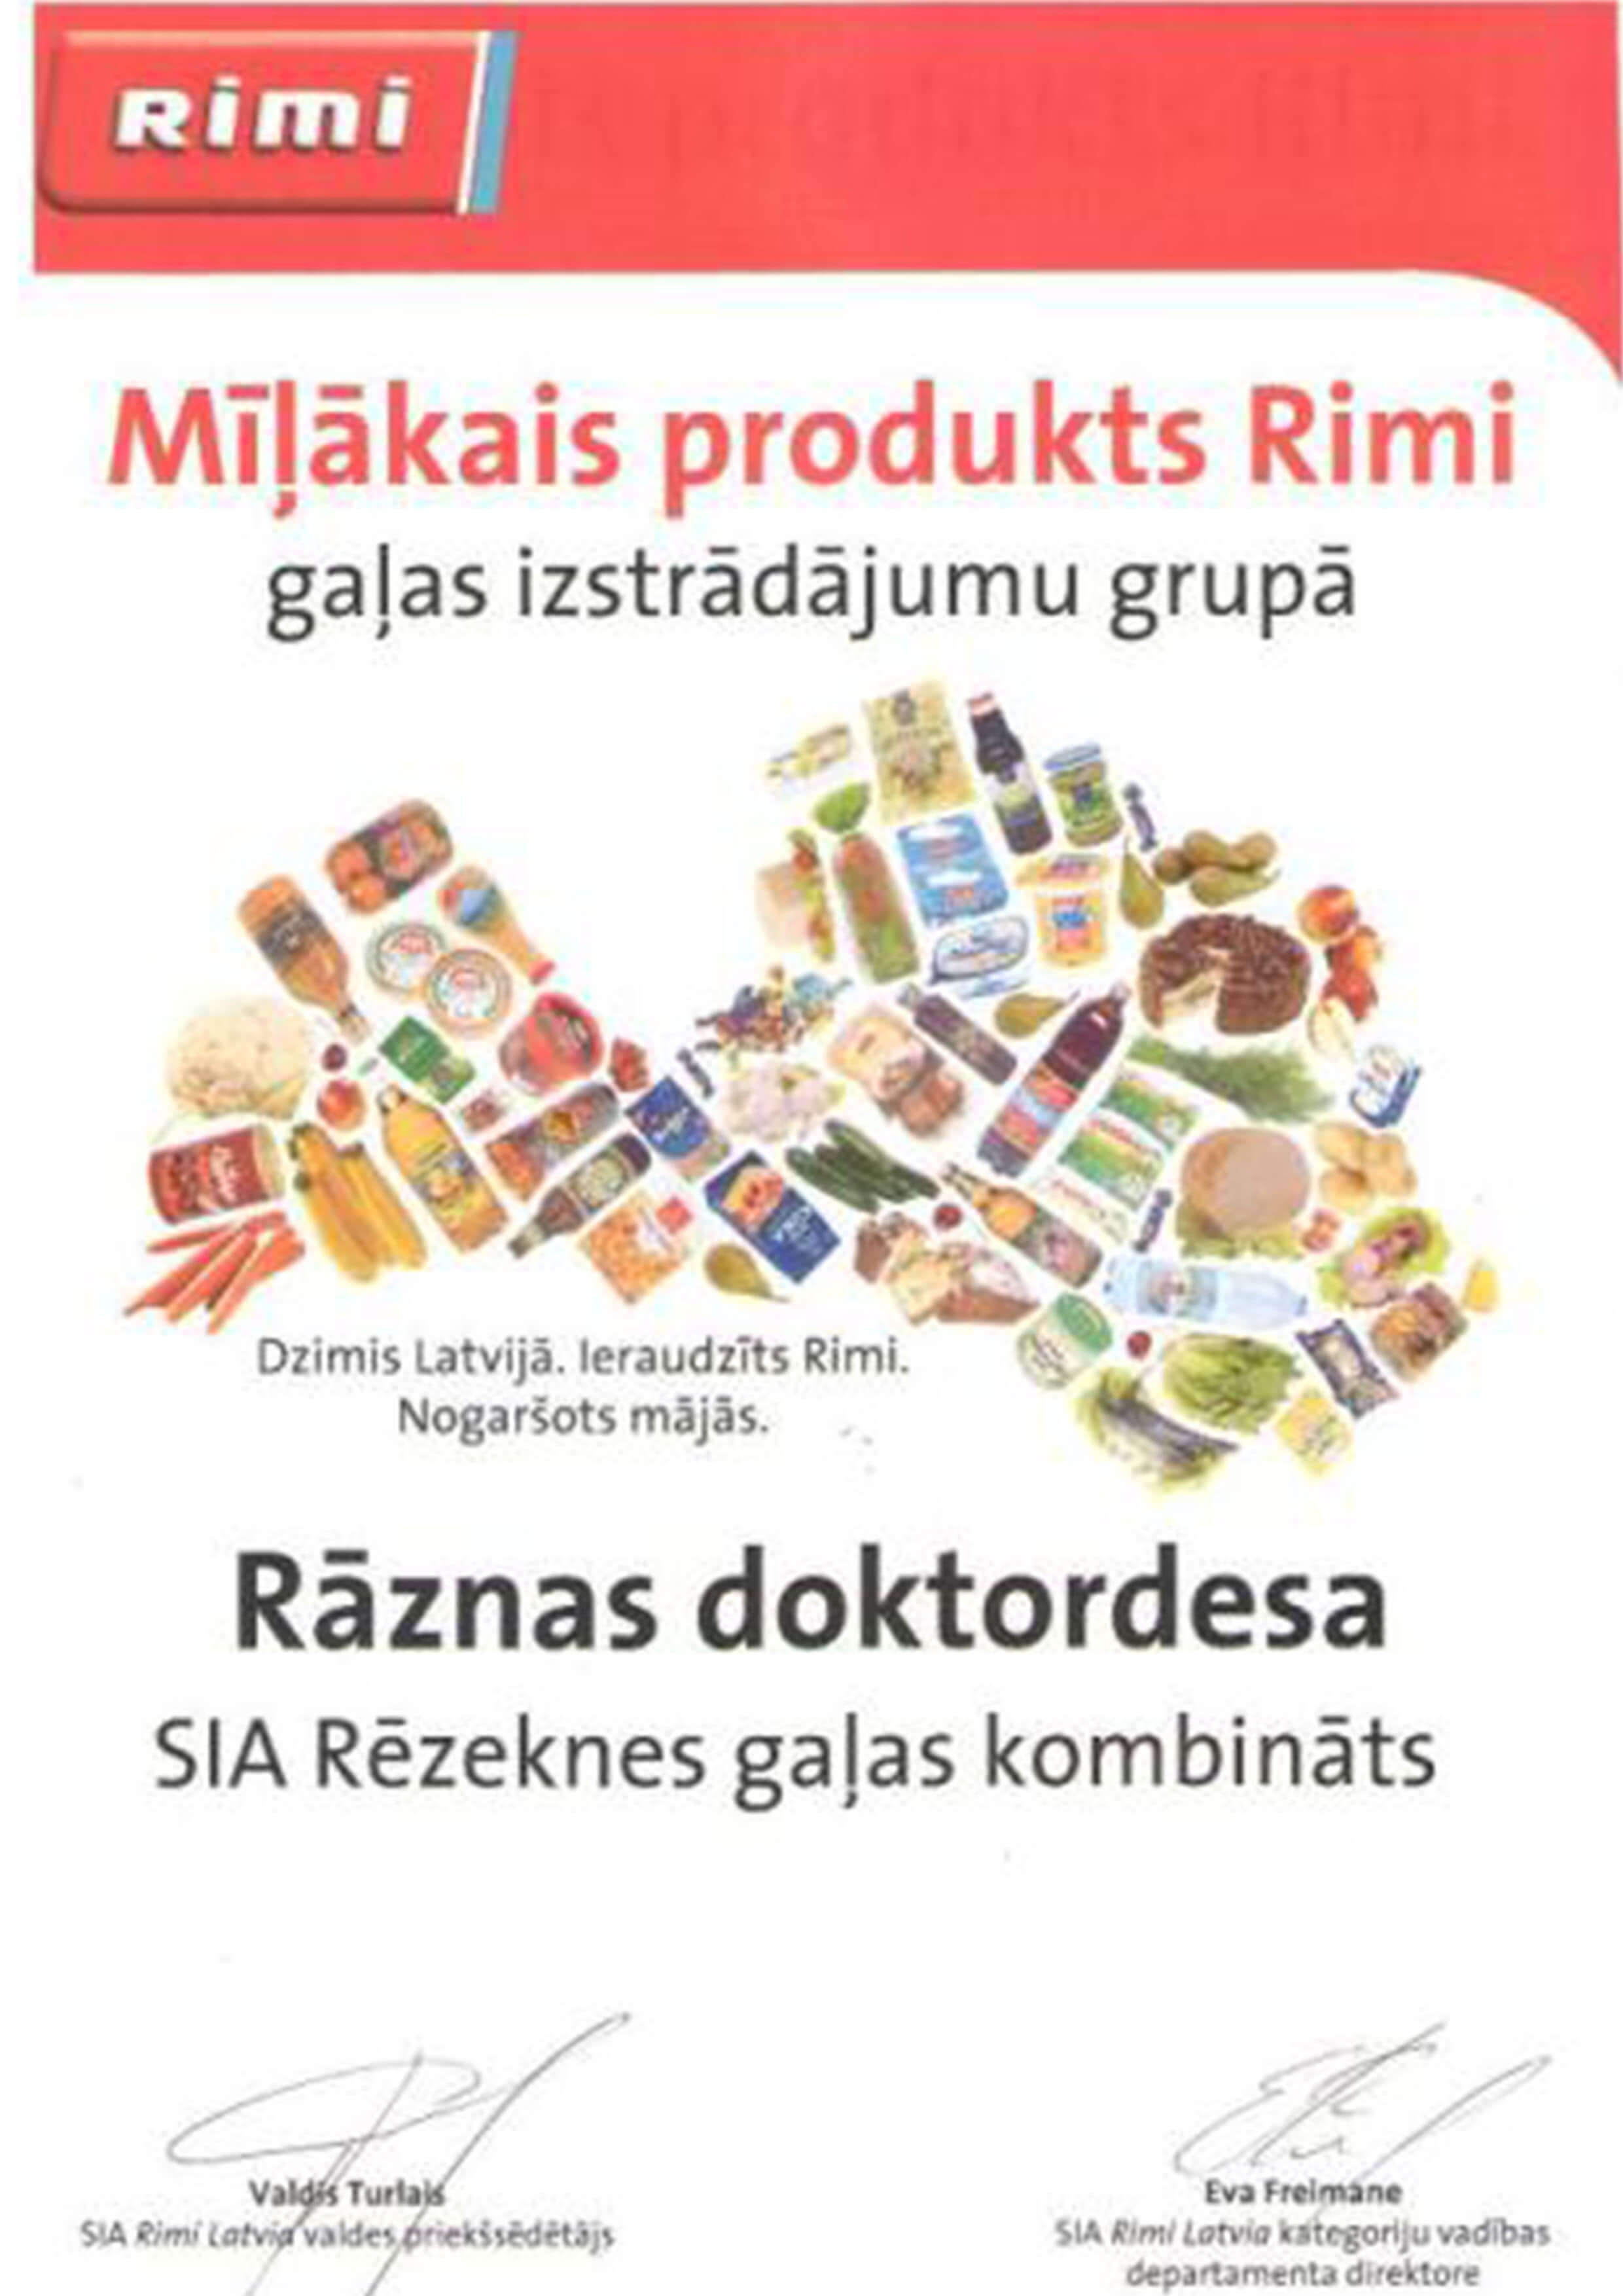 Apbalvojums Rāznas doktordesai - Mīļākais produkts Rimi gaļas izstrādājumu grupā